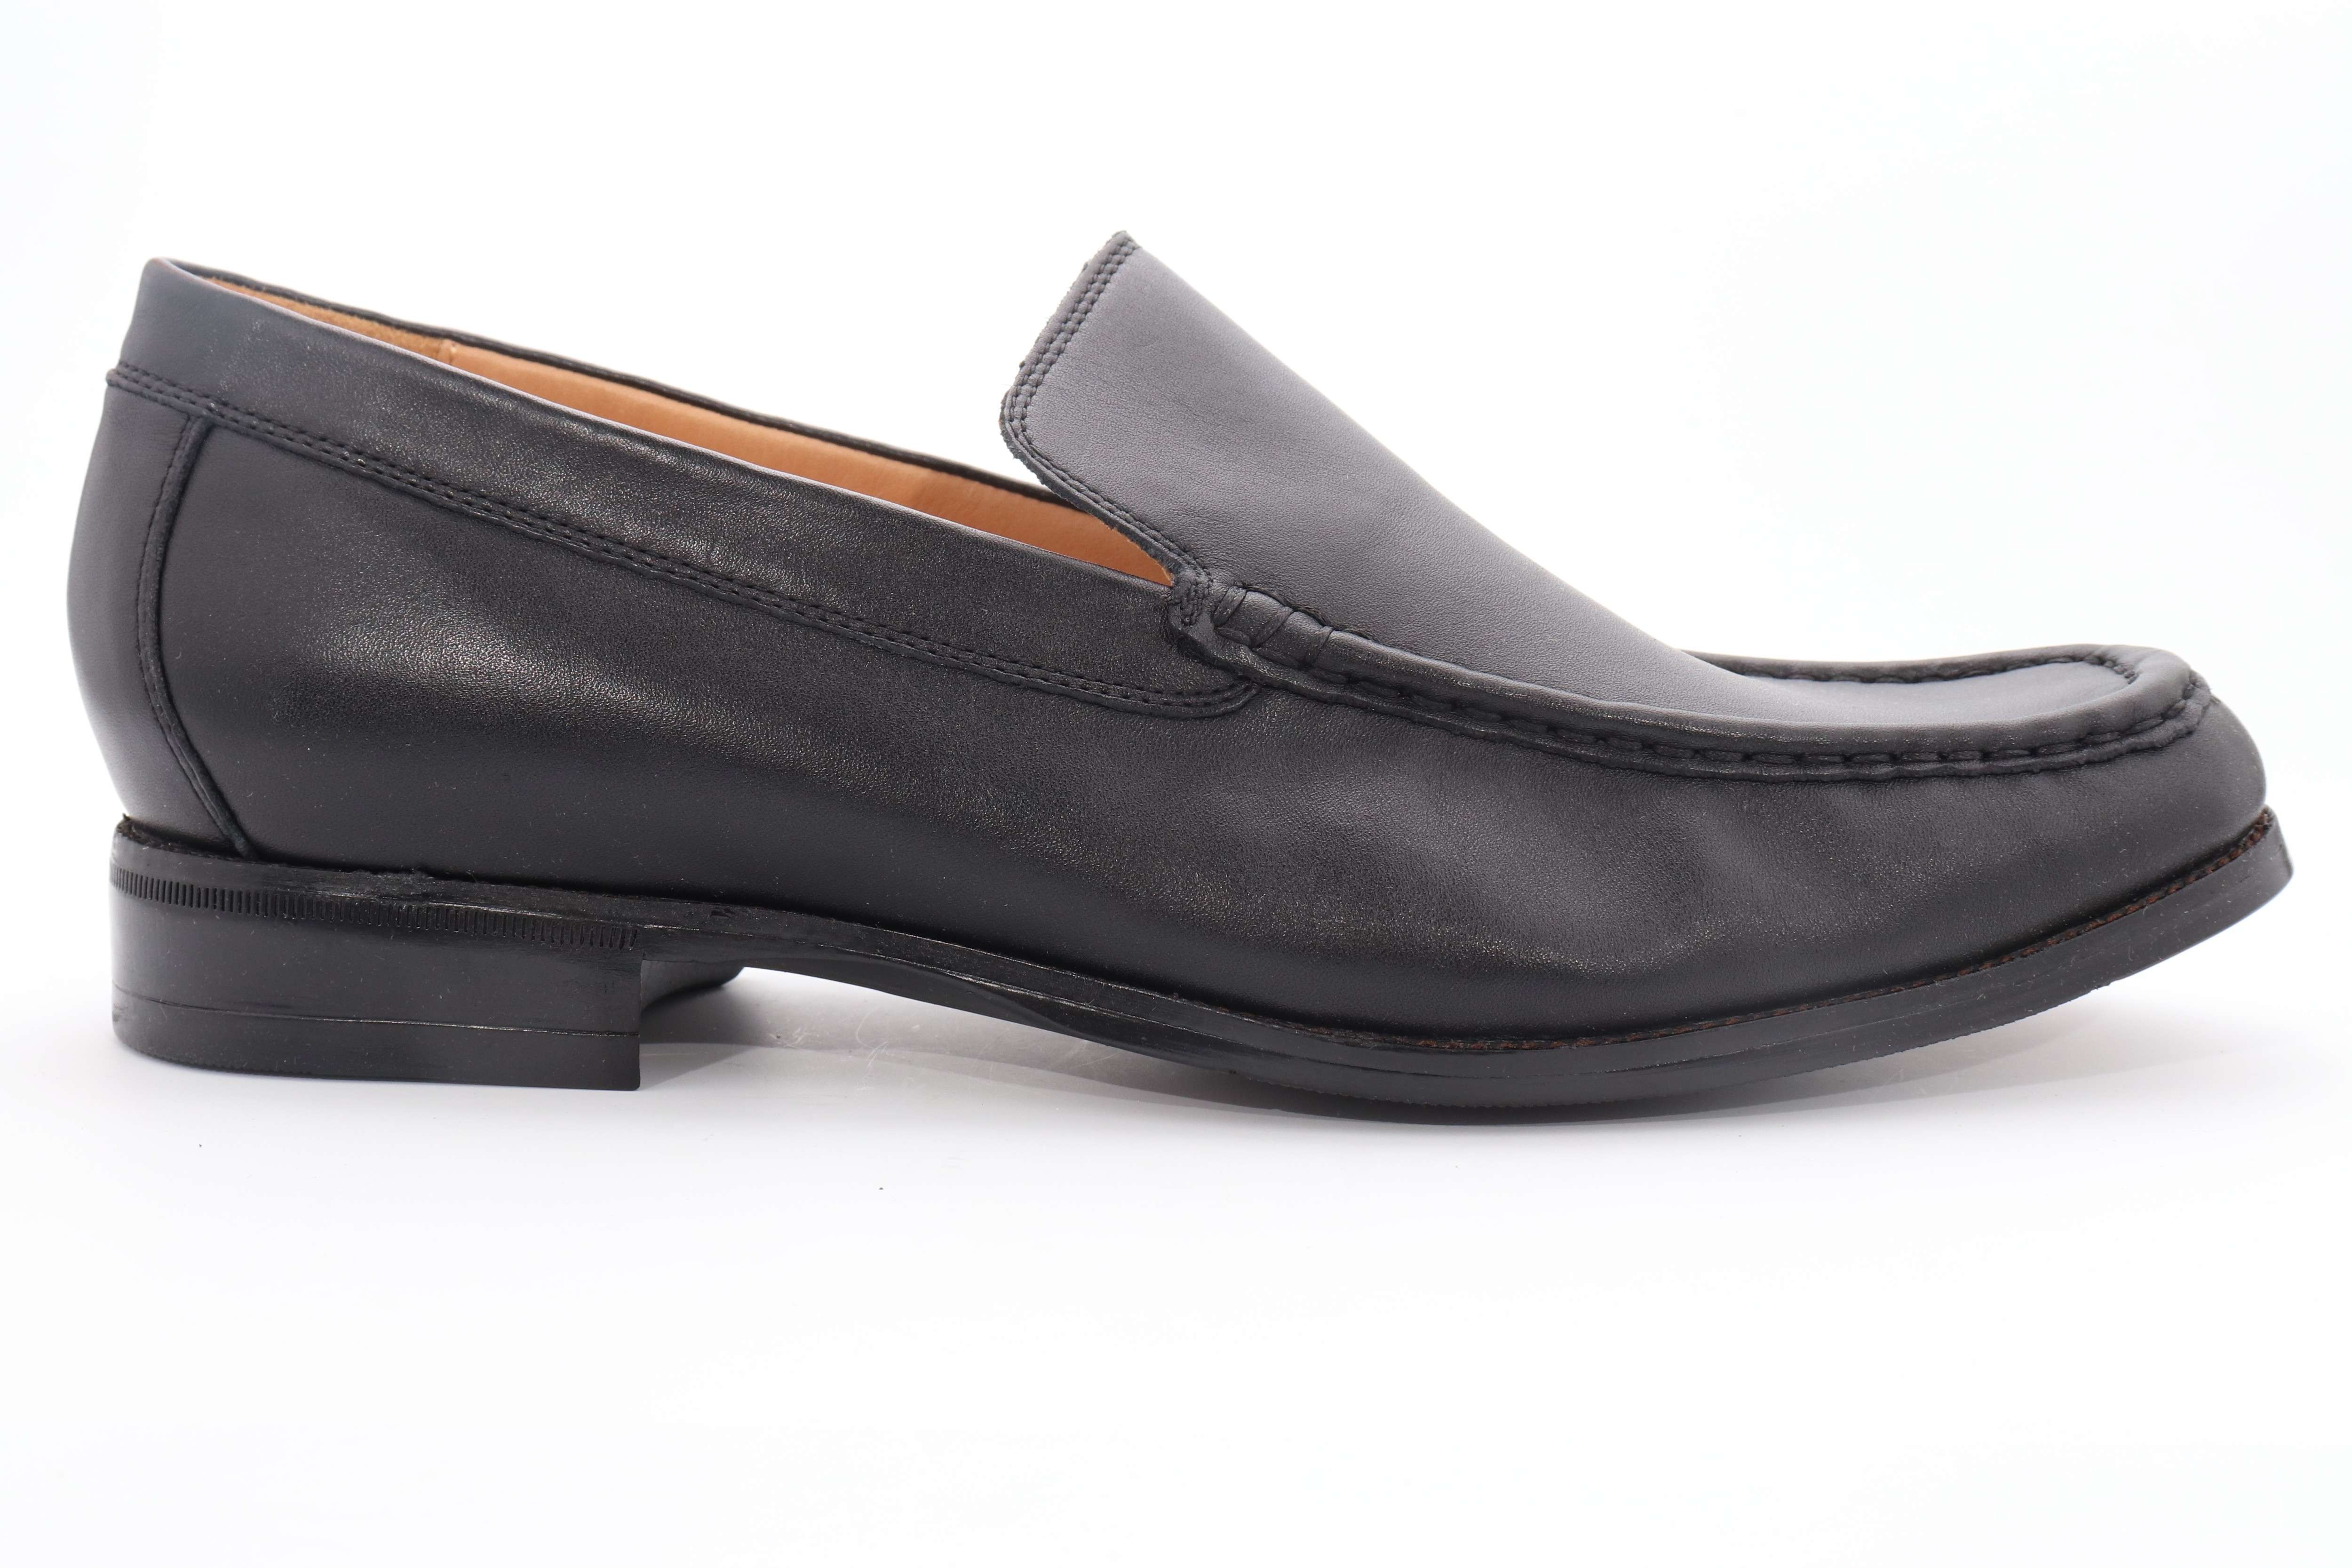 Abeo Morgan Dress Shoes Black Men's Size US 11.5 Neutral () | eBay